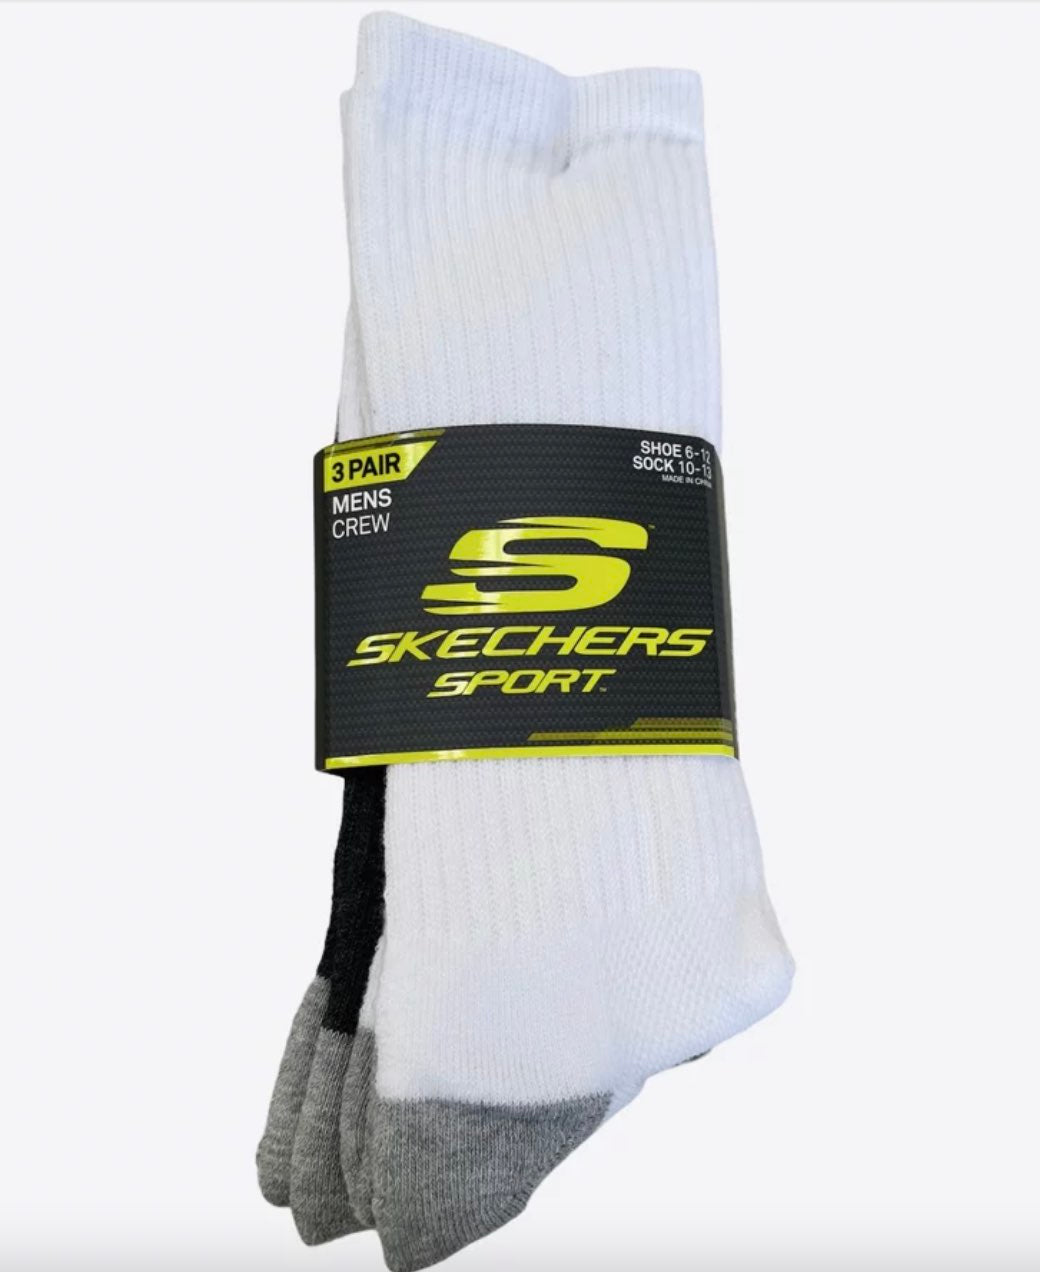 Skechers 3PK Crew Socks WHT/GRY/BLK